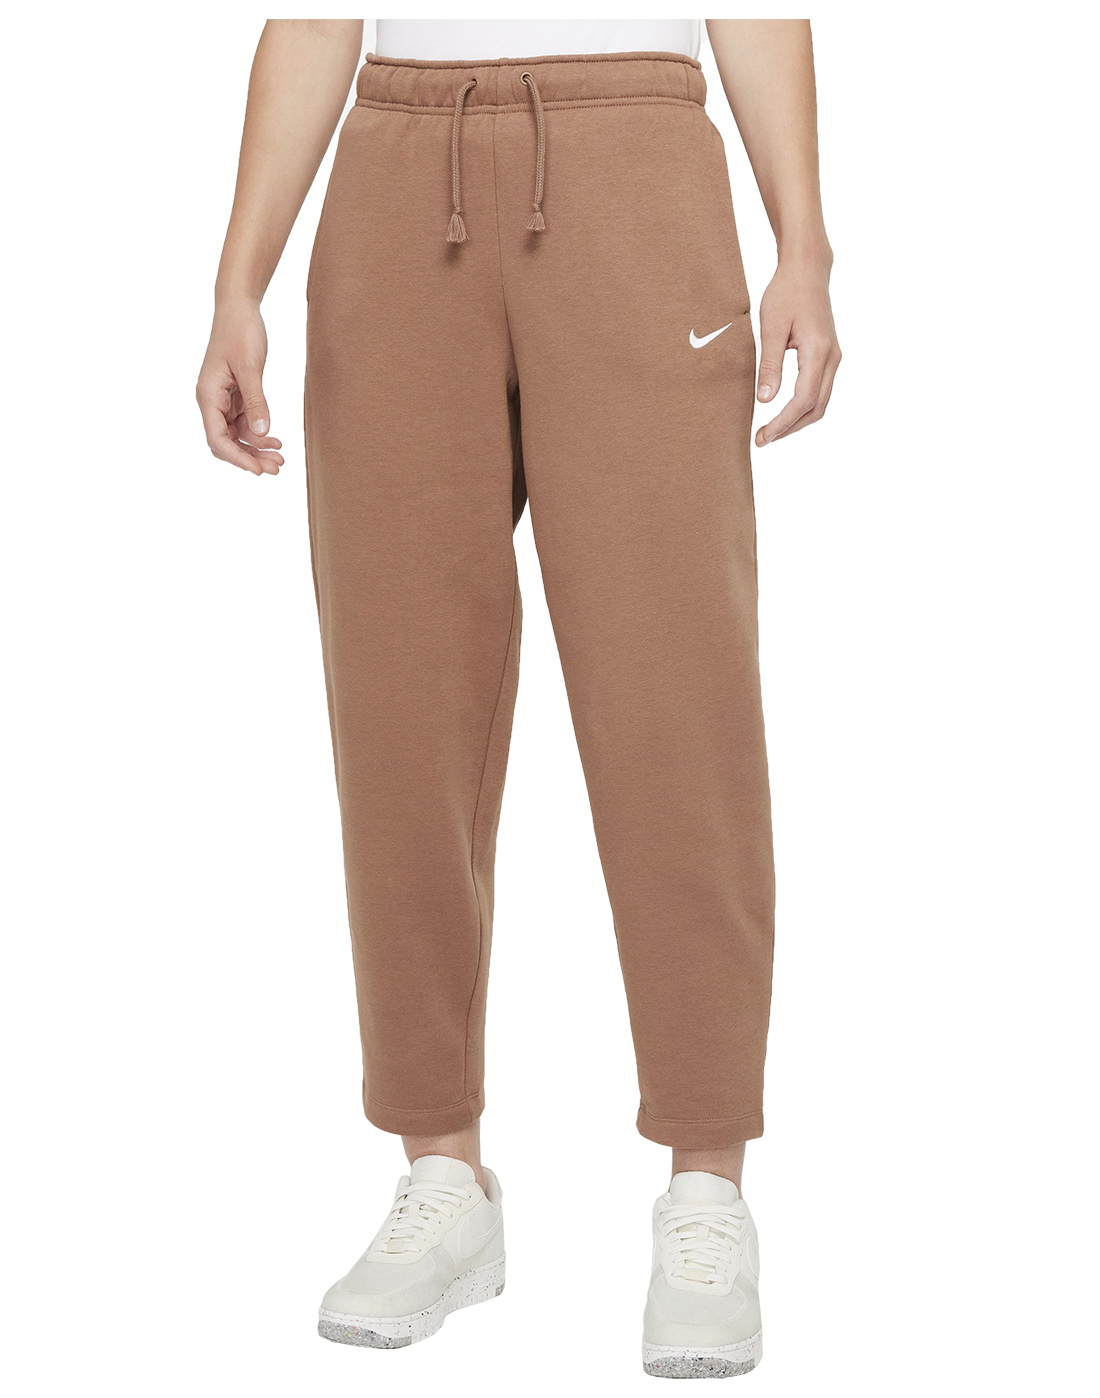 Nike Womens Essential Fleece Pants - Brown